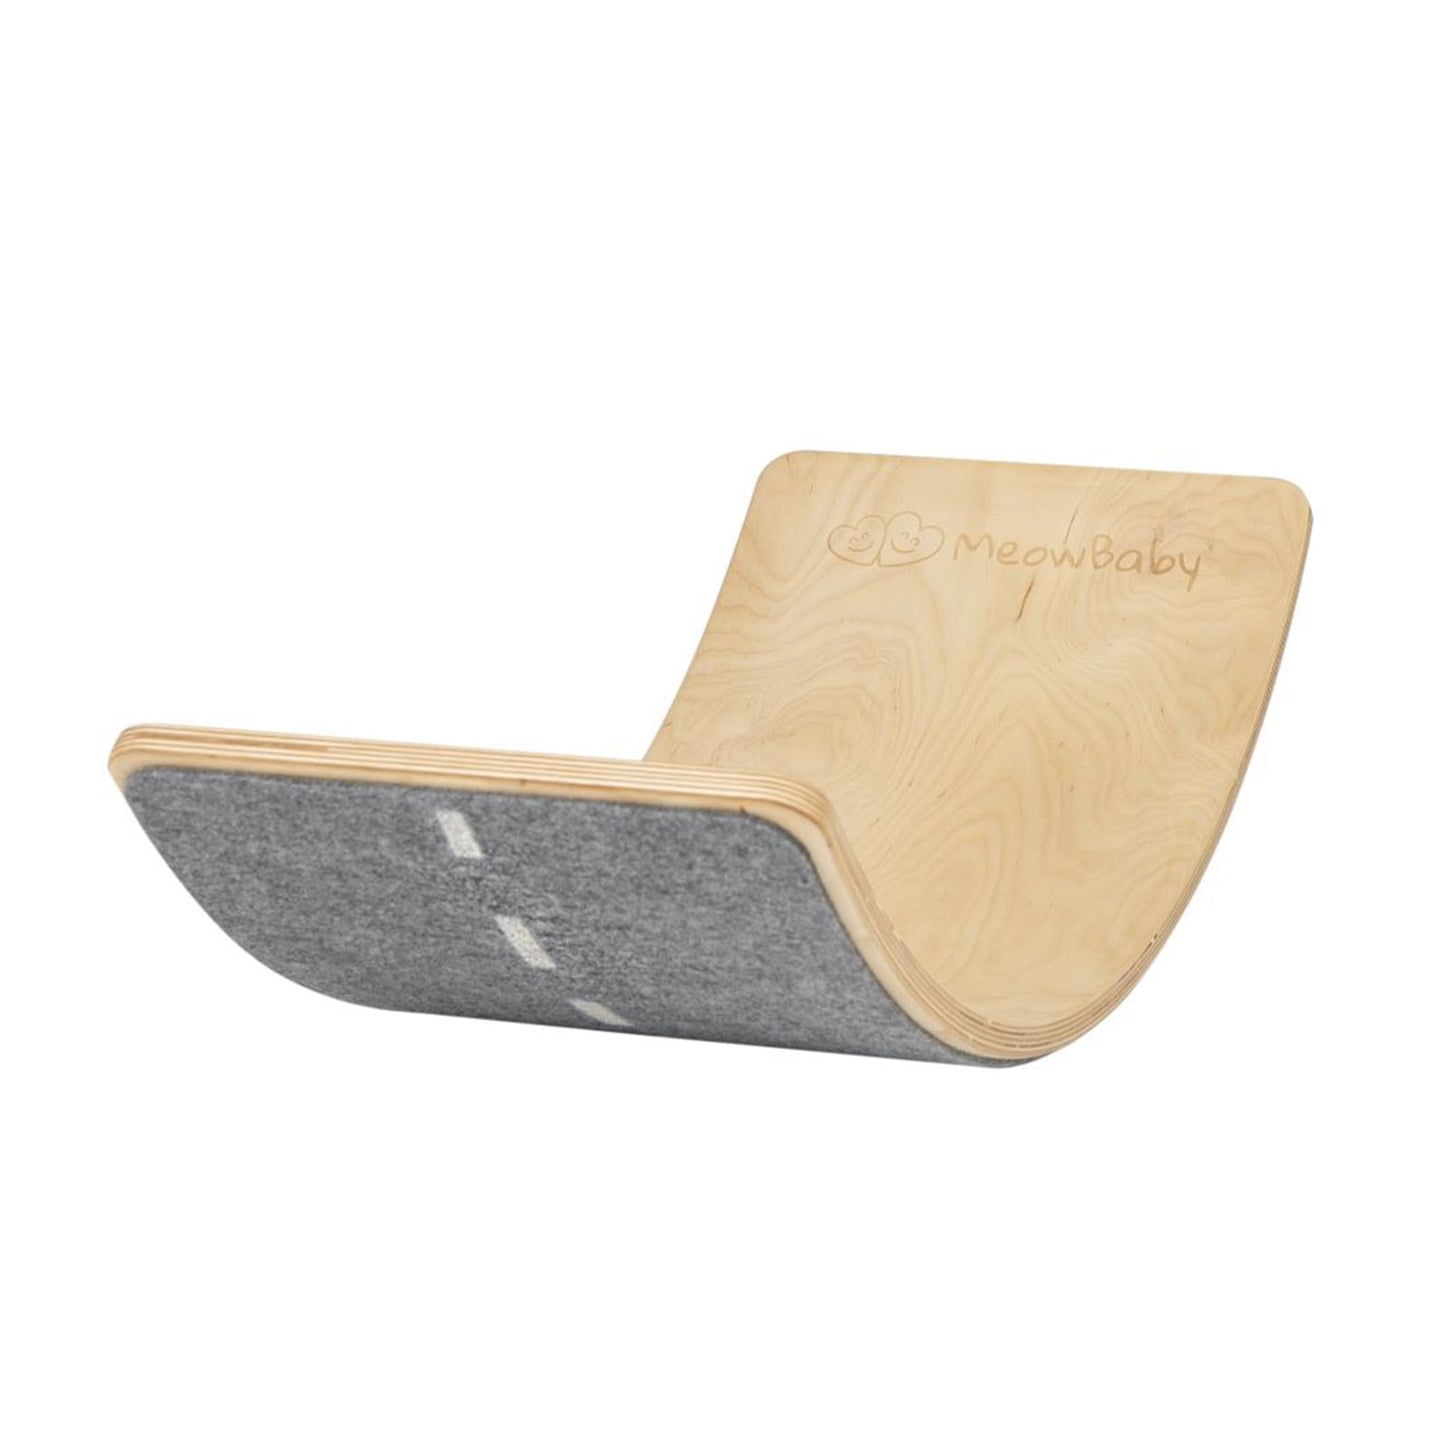 MeowBaby® Deska do Balansowania z filcem 80x30cm dla dzieci. Drewniany Balance Board naturalny, Filc szary autostrada